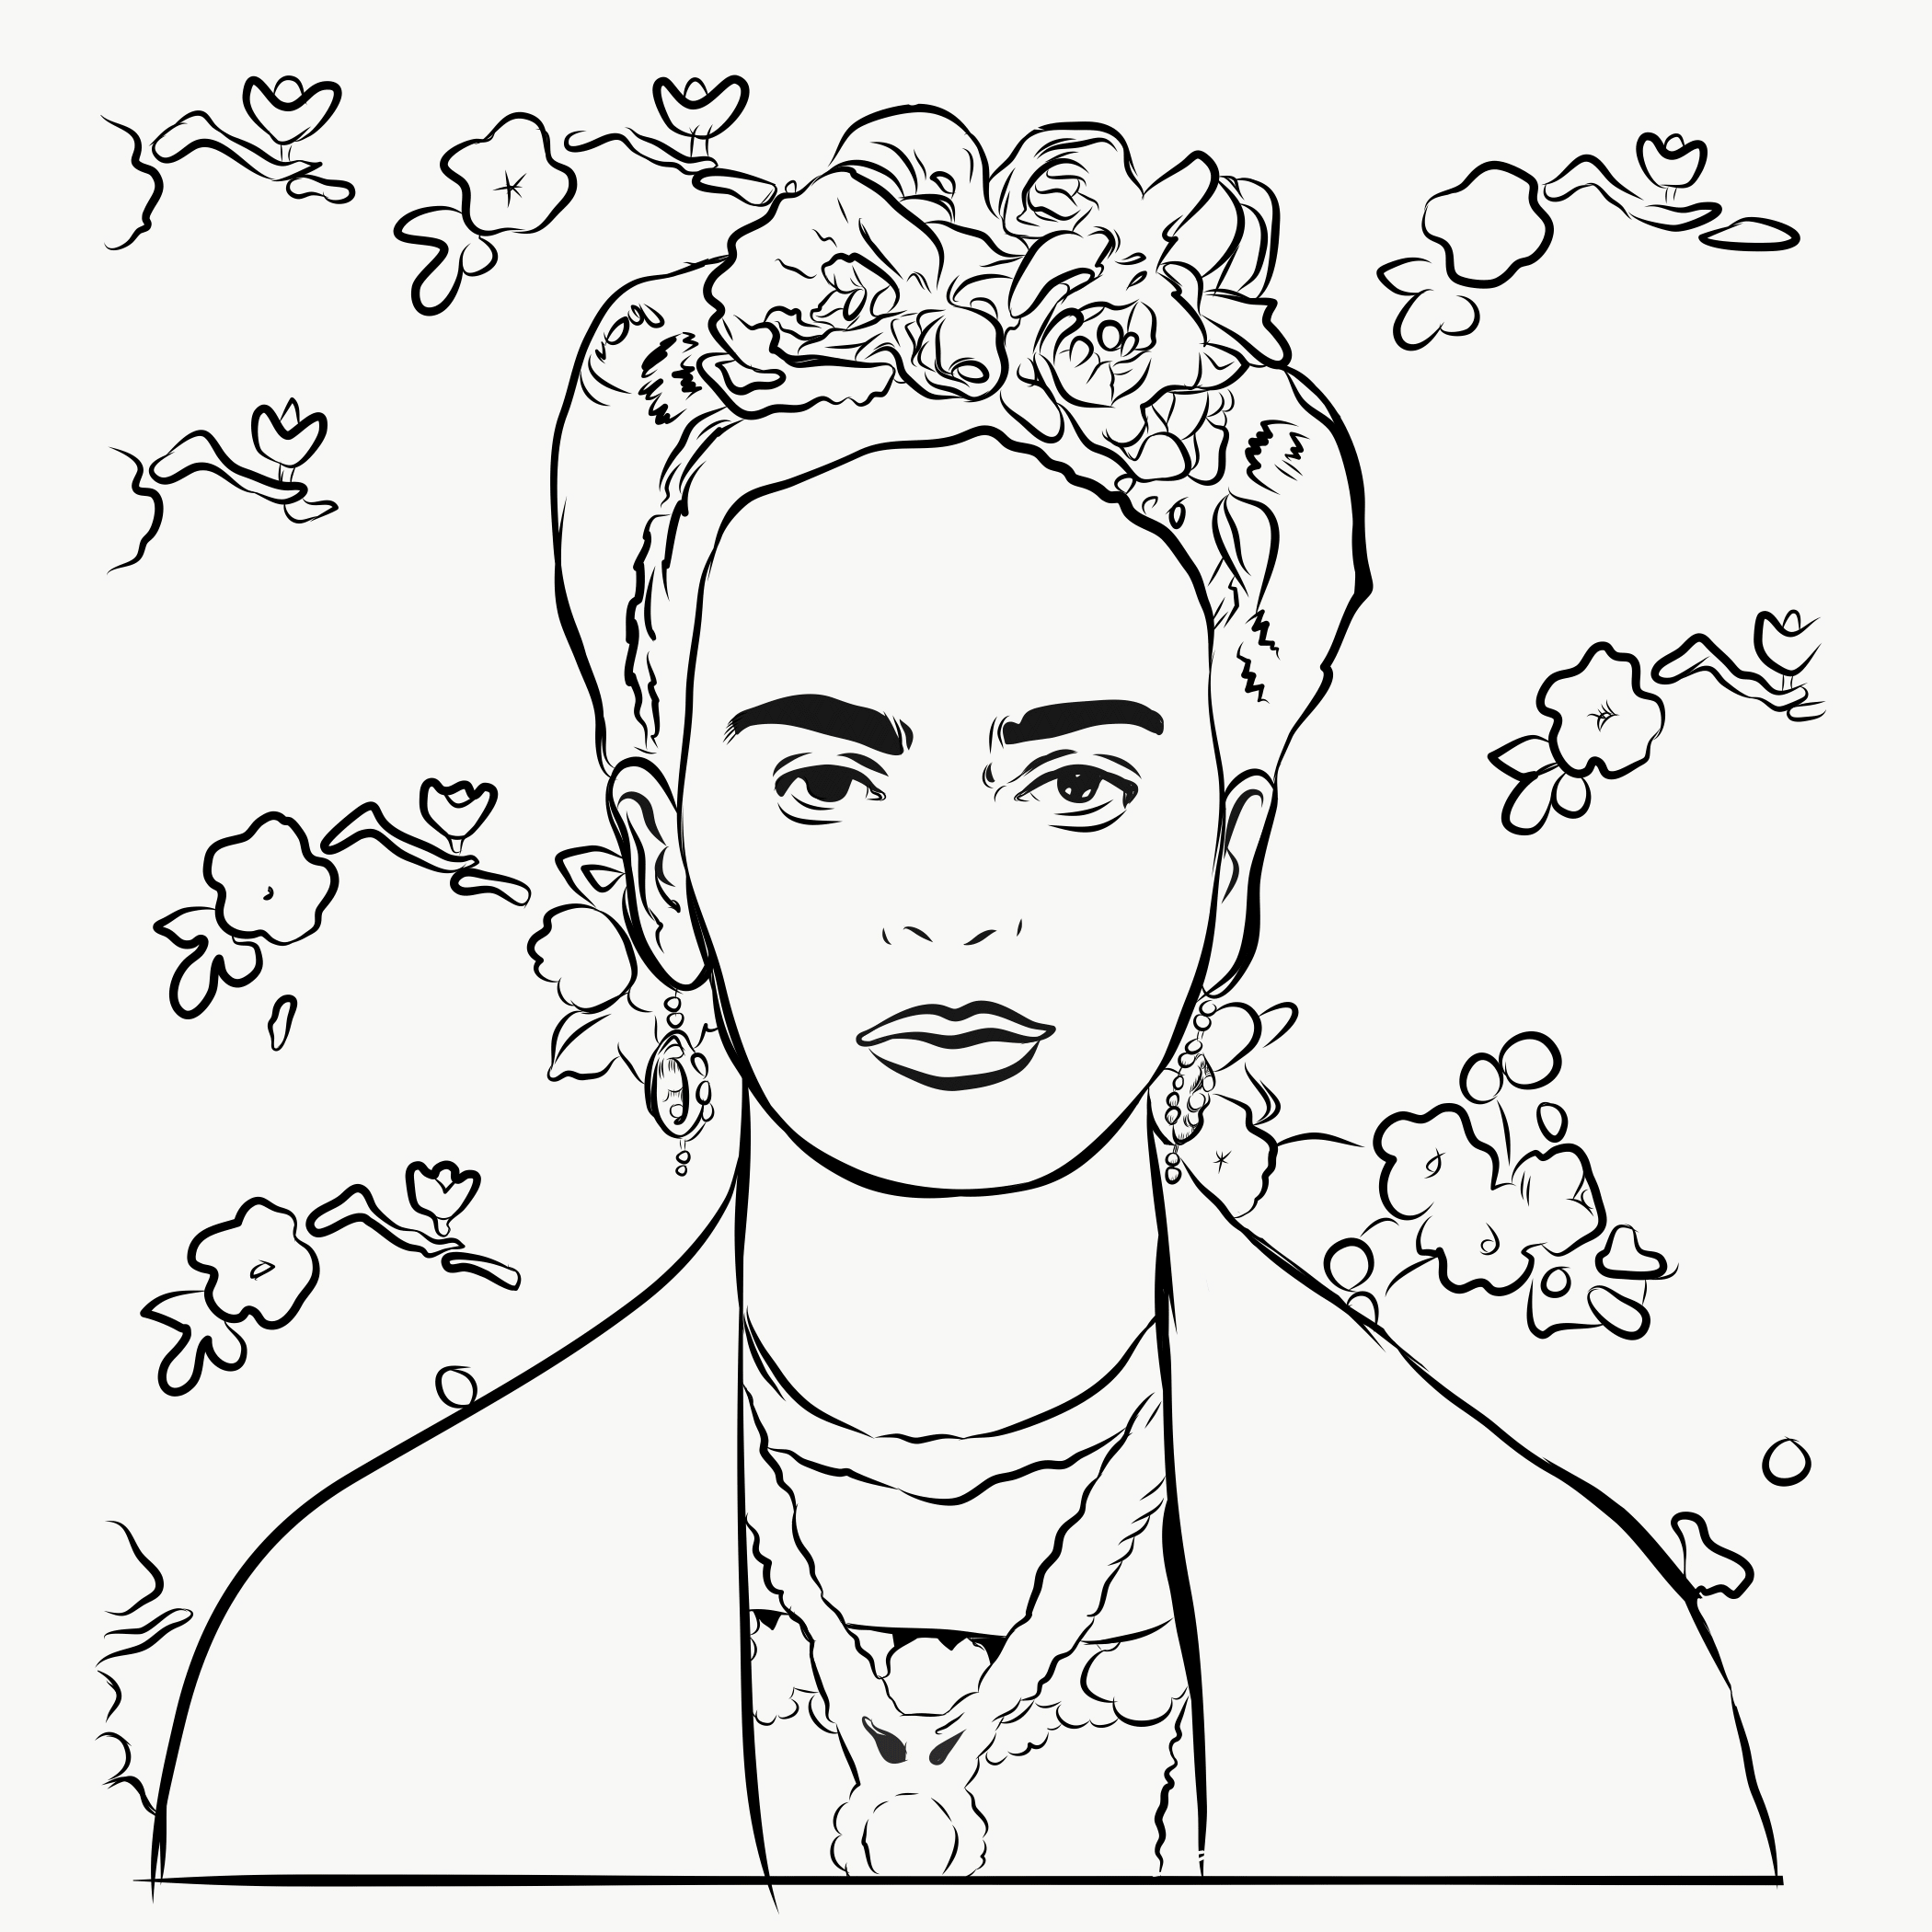 Frida Kahlo digital portrait